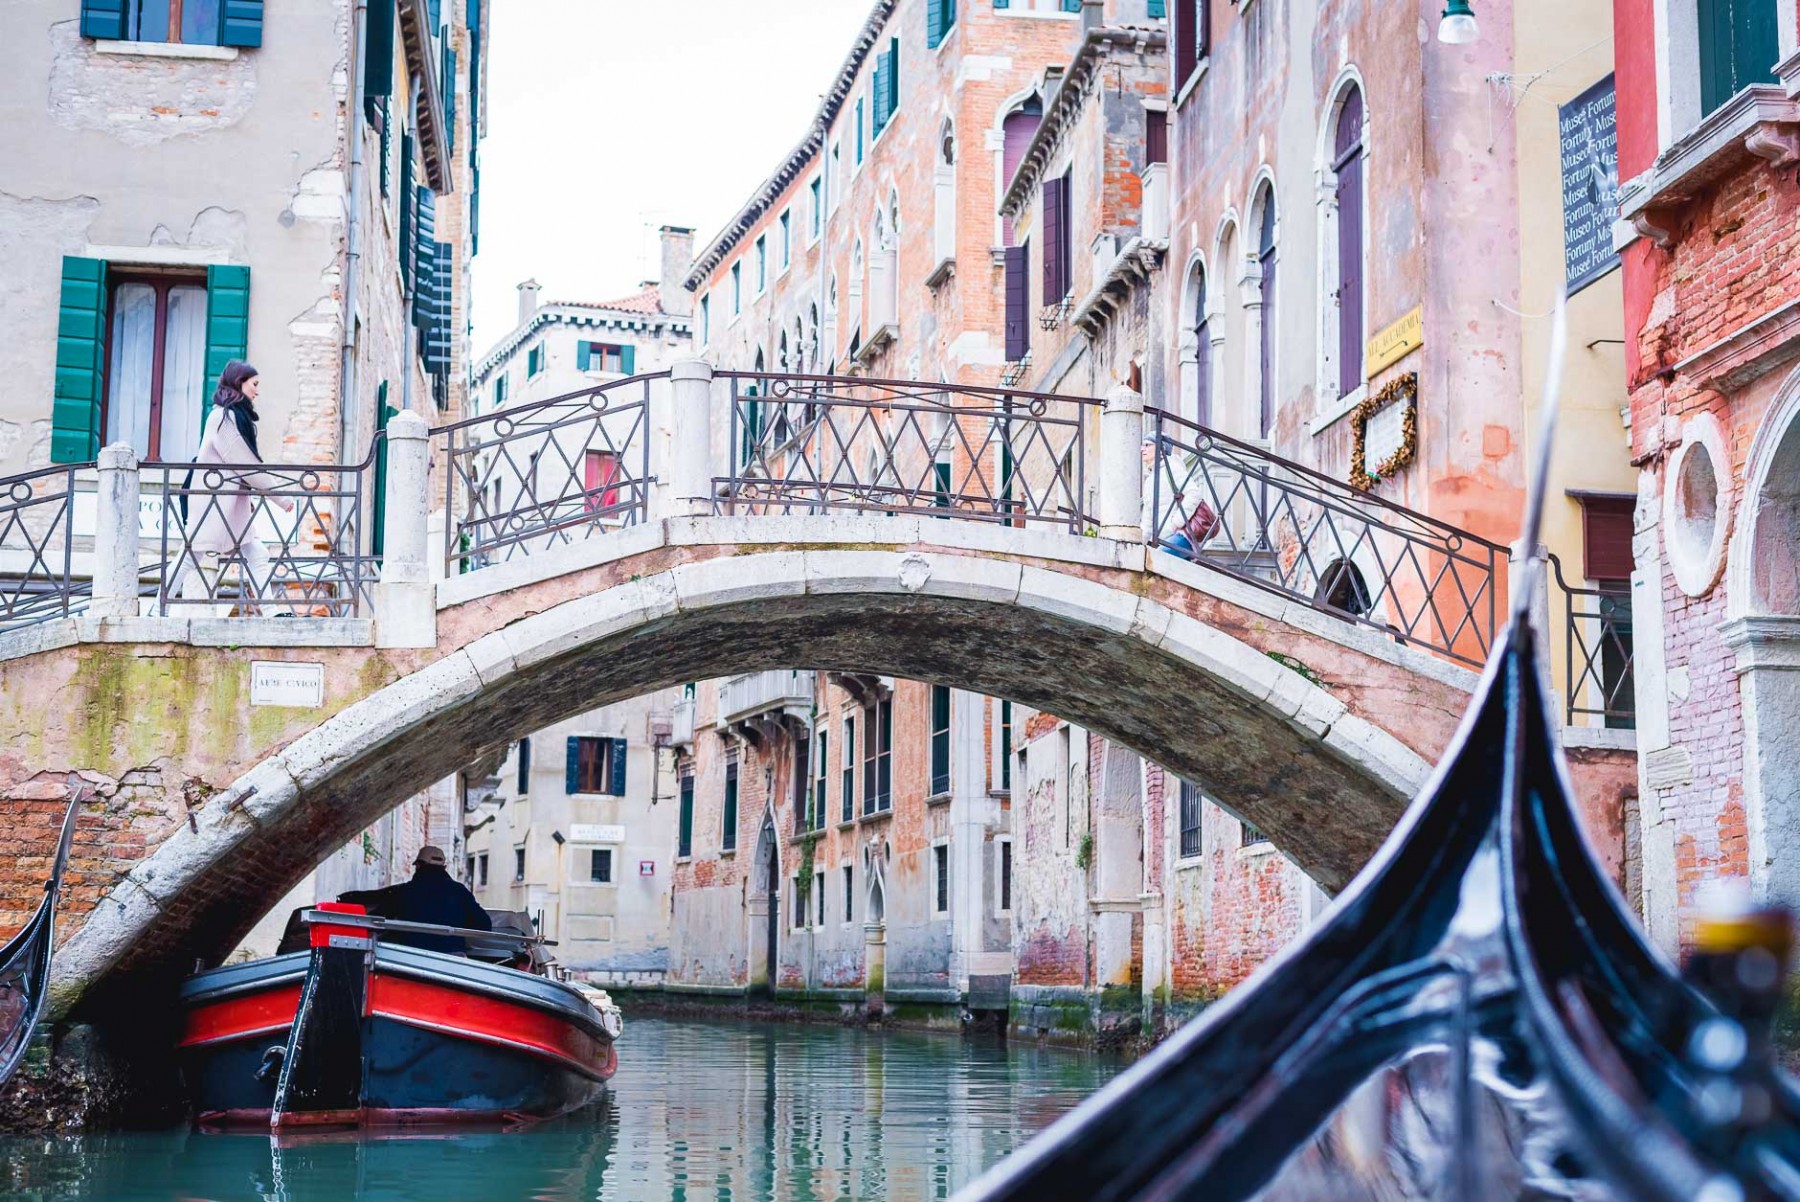 Gondola ride with Walks of Italy in Venice, Italy 